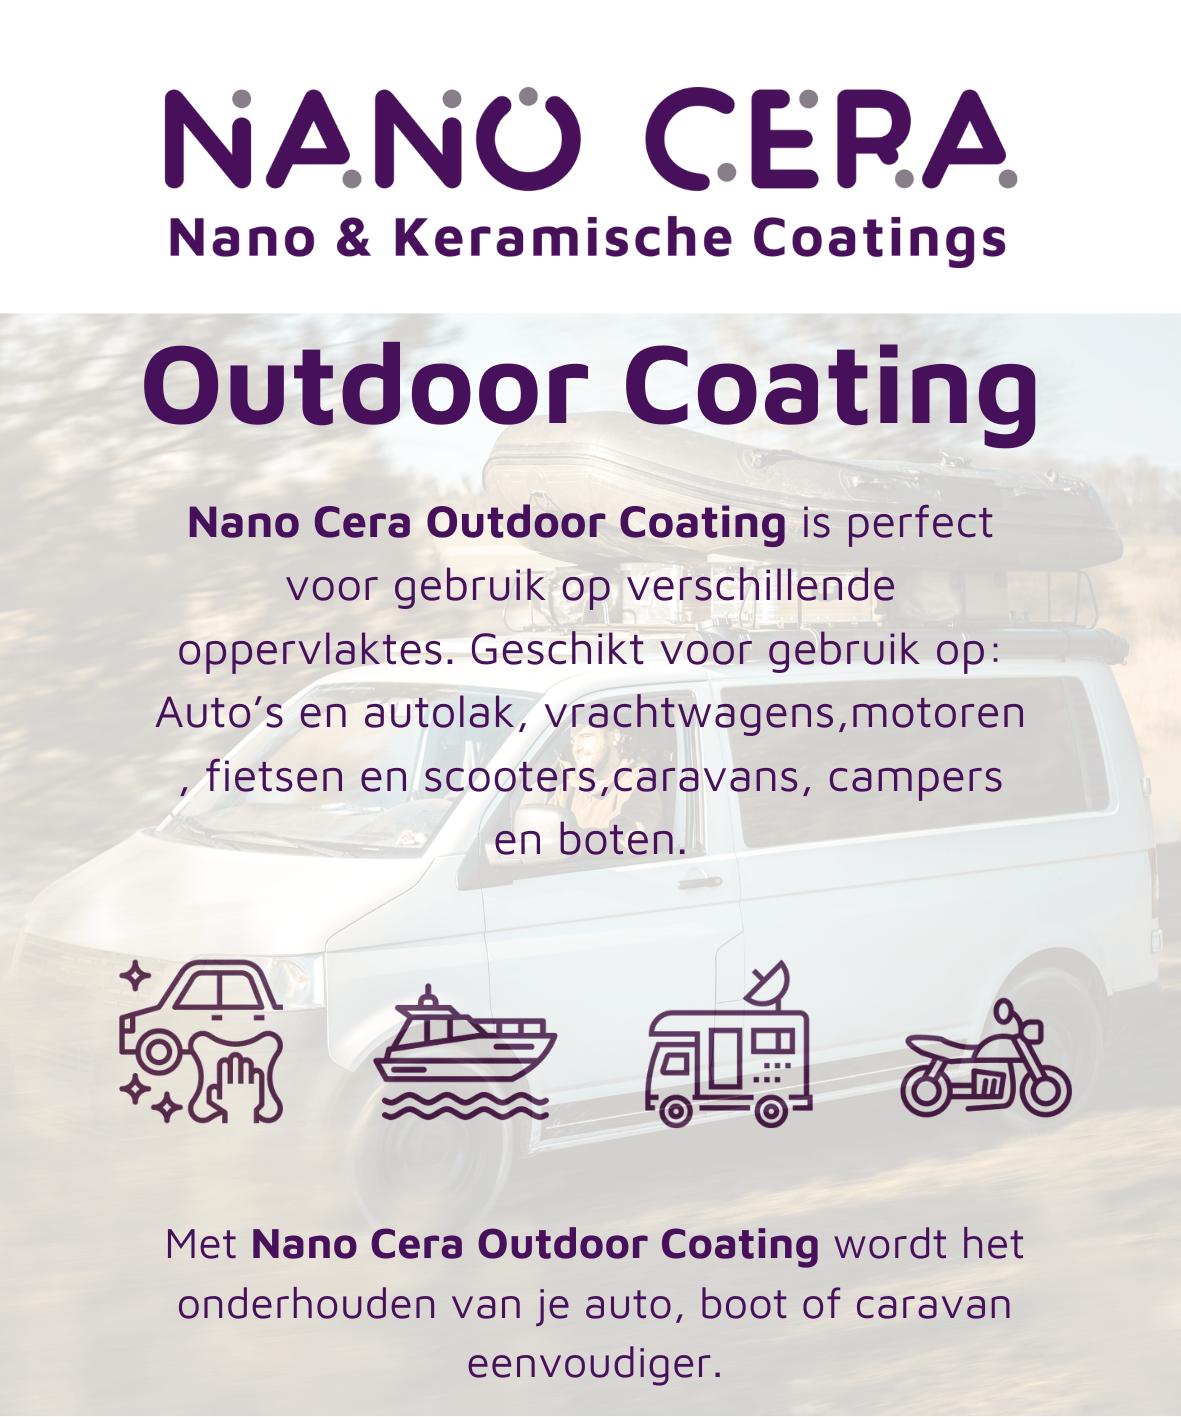 Nano Cera outdoor coating